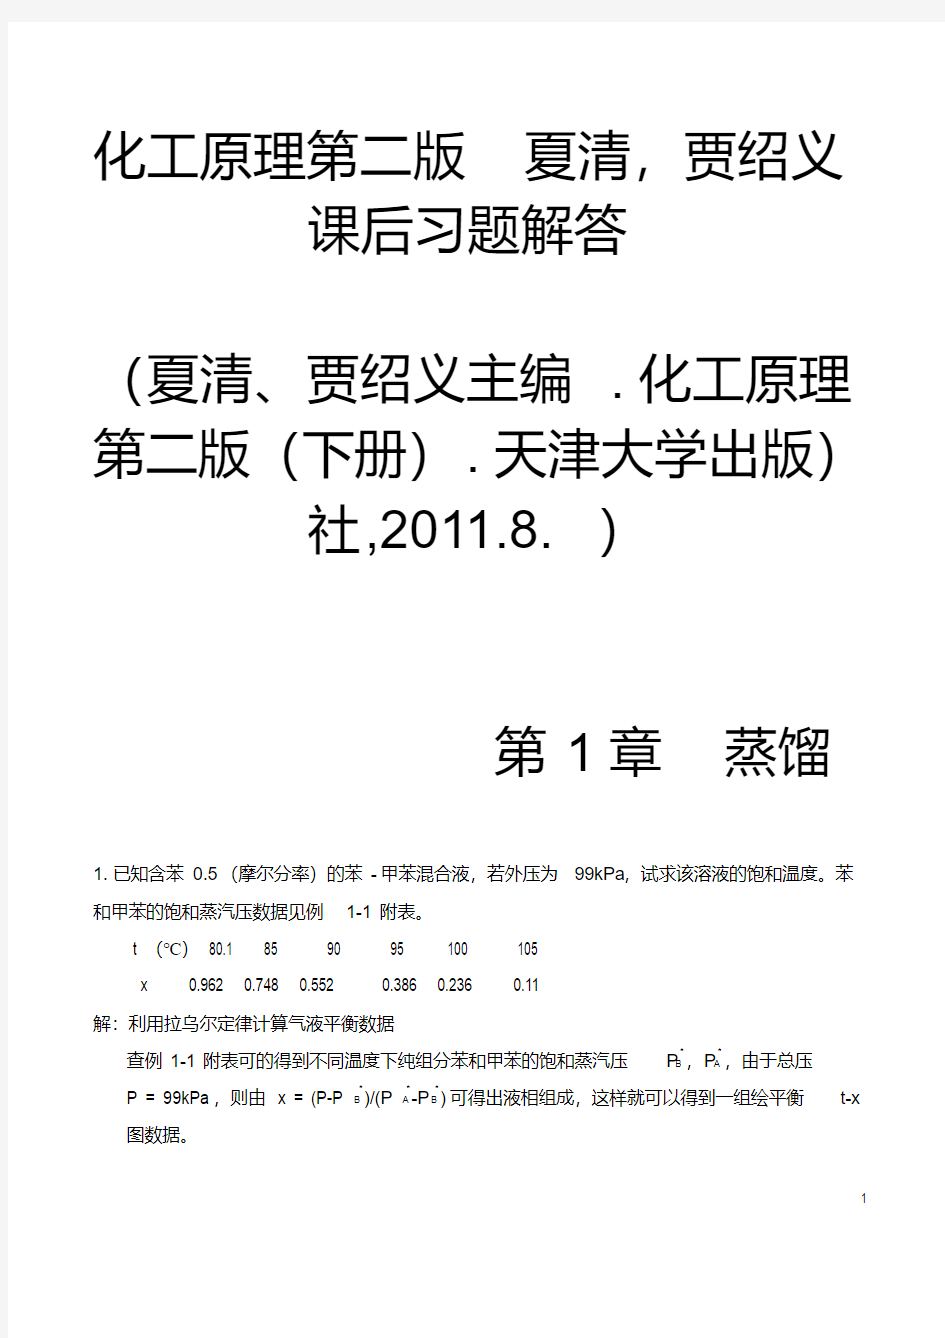  化工原理第二版(下册)夏清贾绍义课后习题解答带图